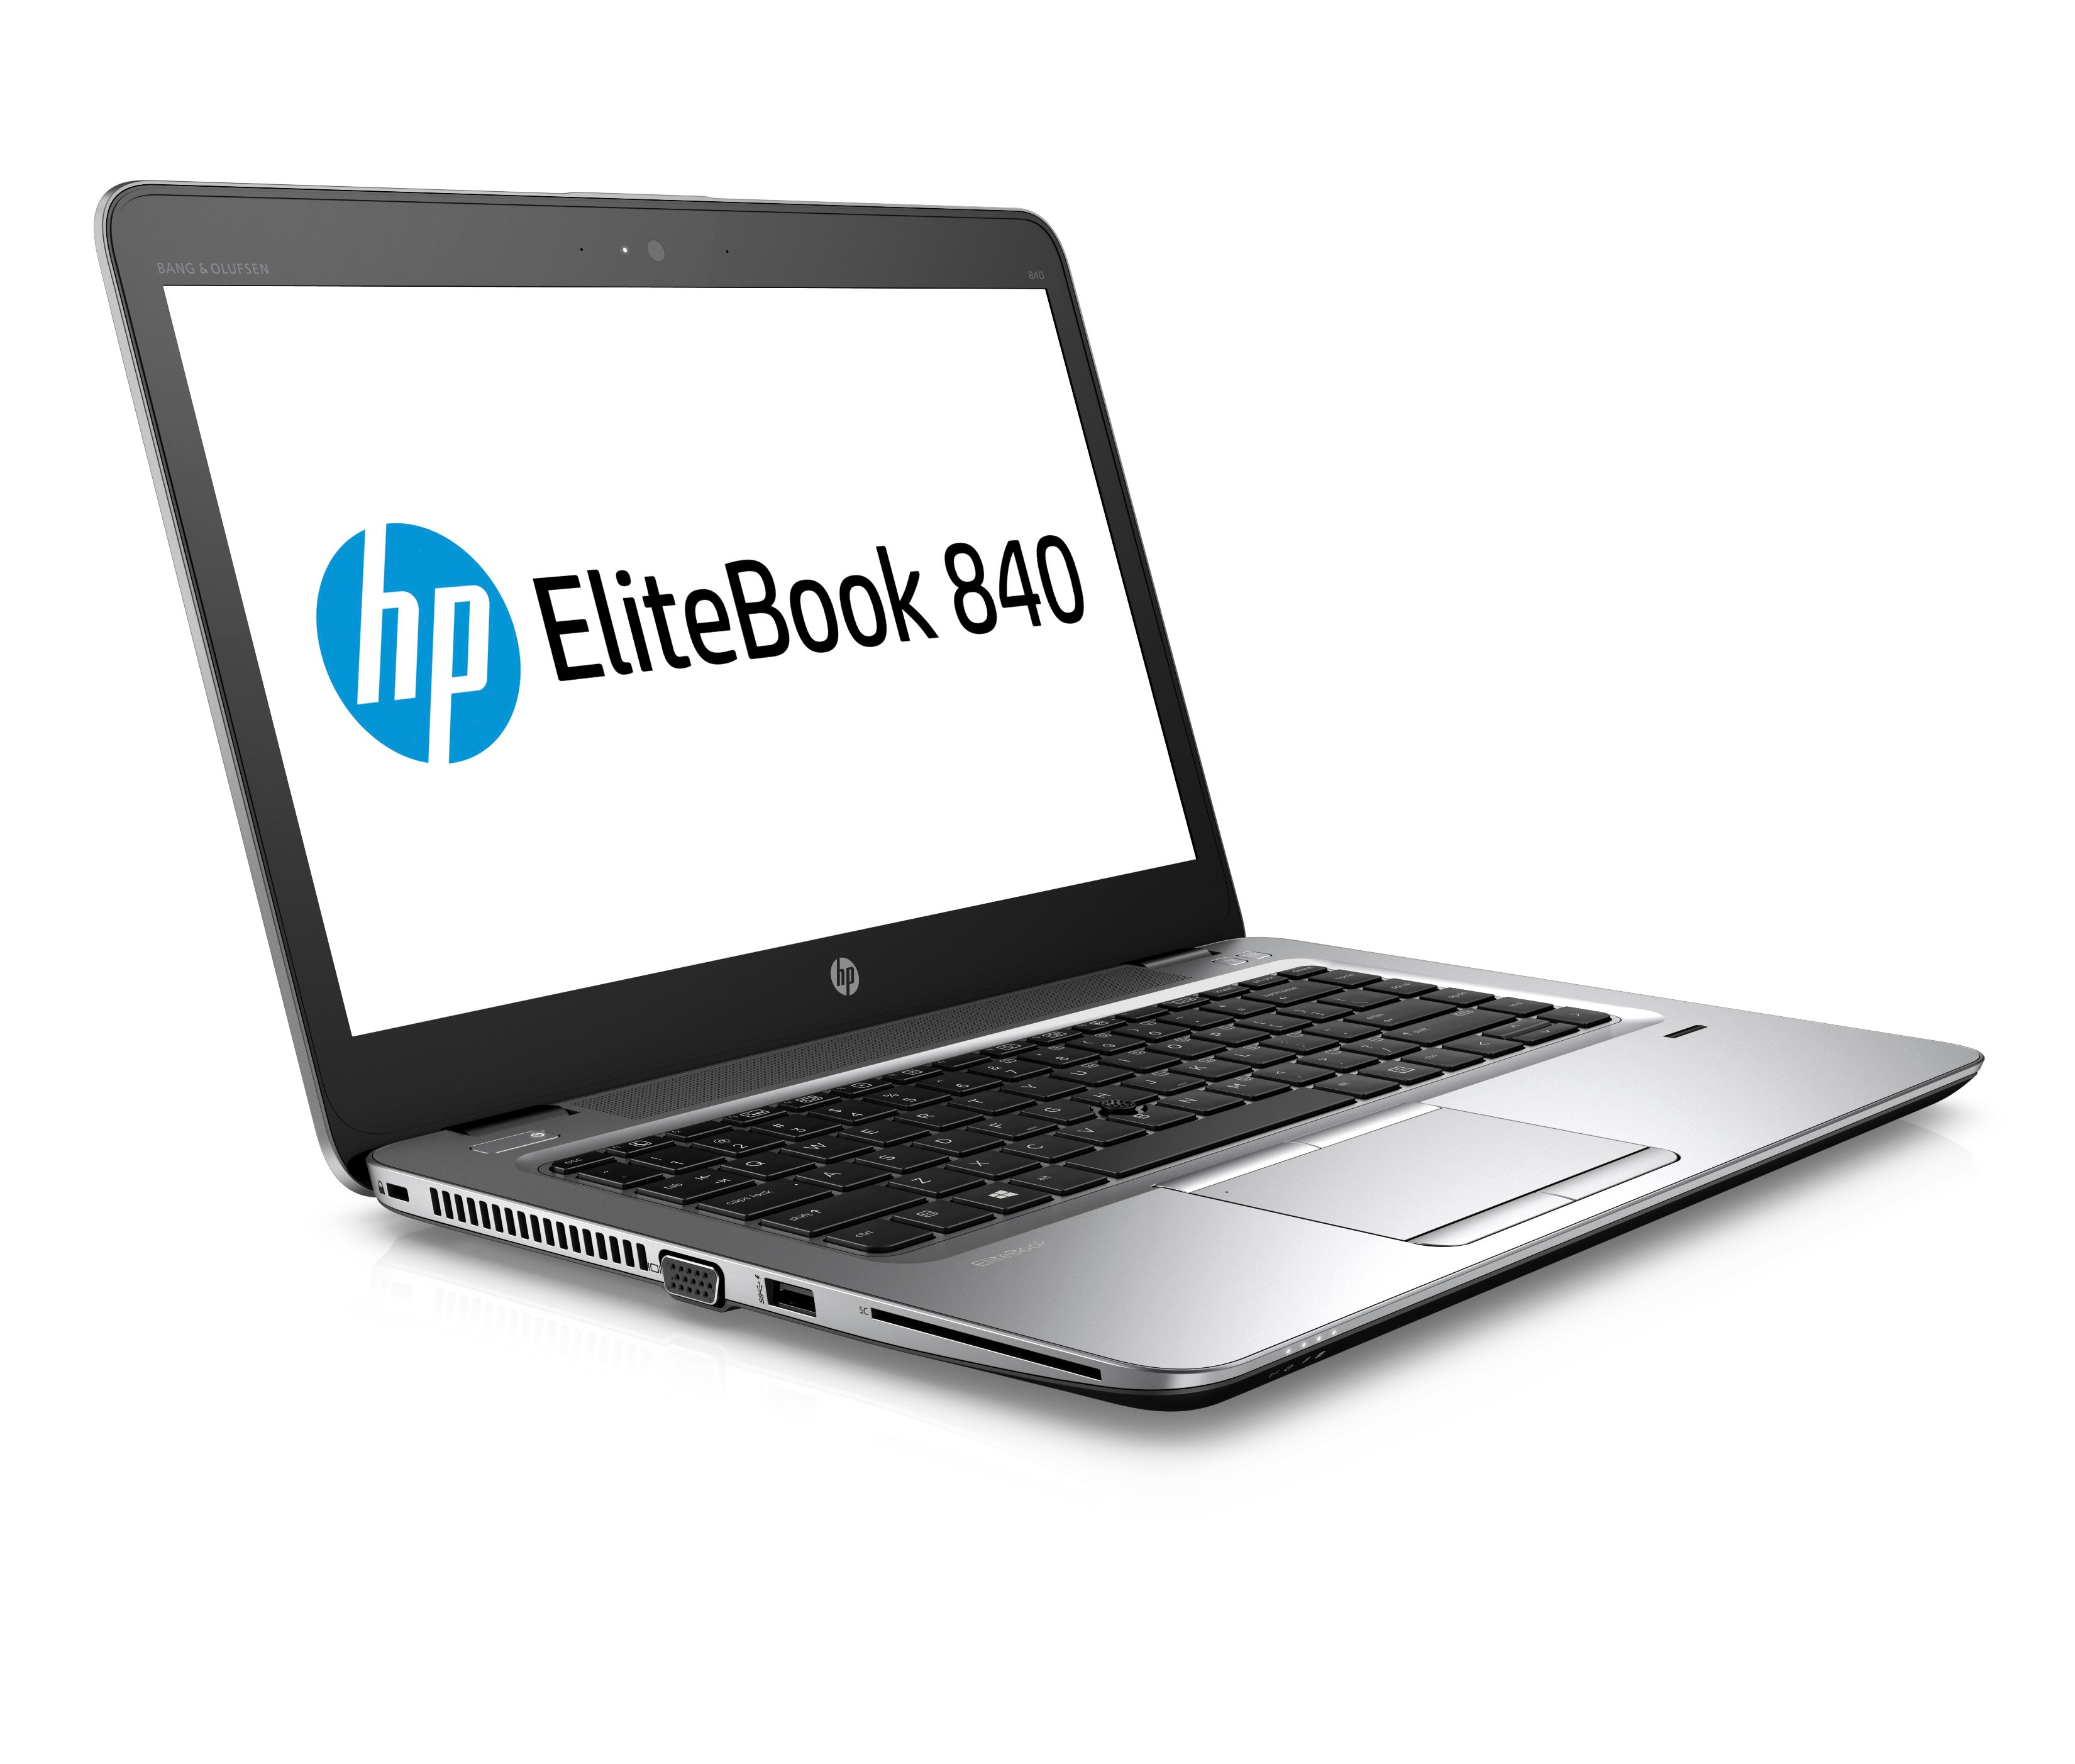 HP EliteBook 840 G4 Touch screen Laptop Core i7 7th Gen 8GB RAM 256GB SSD Win 100